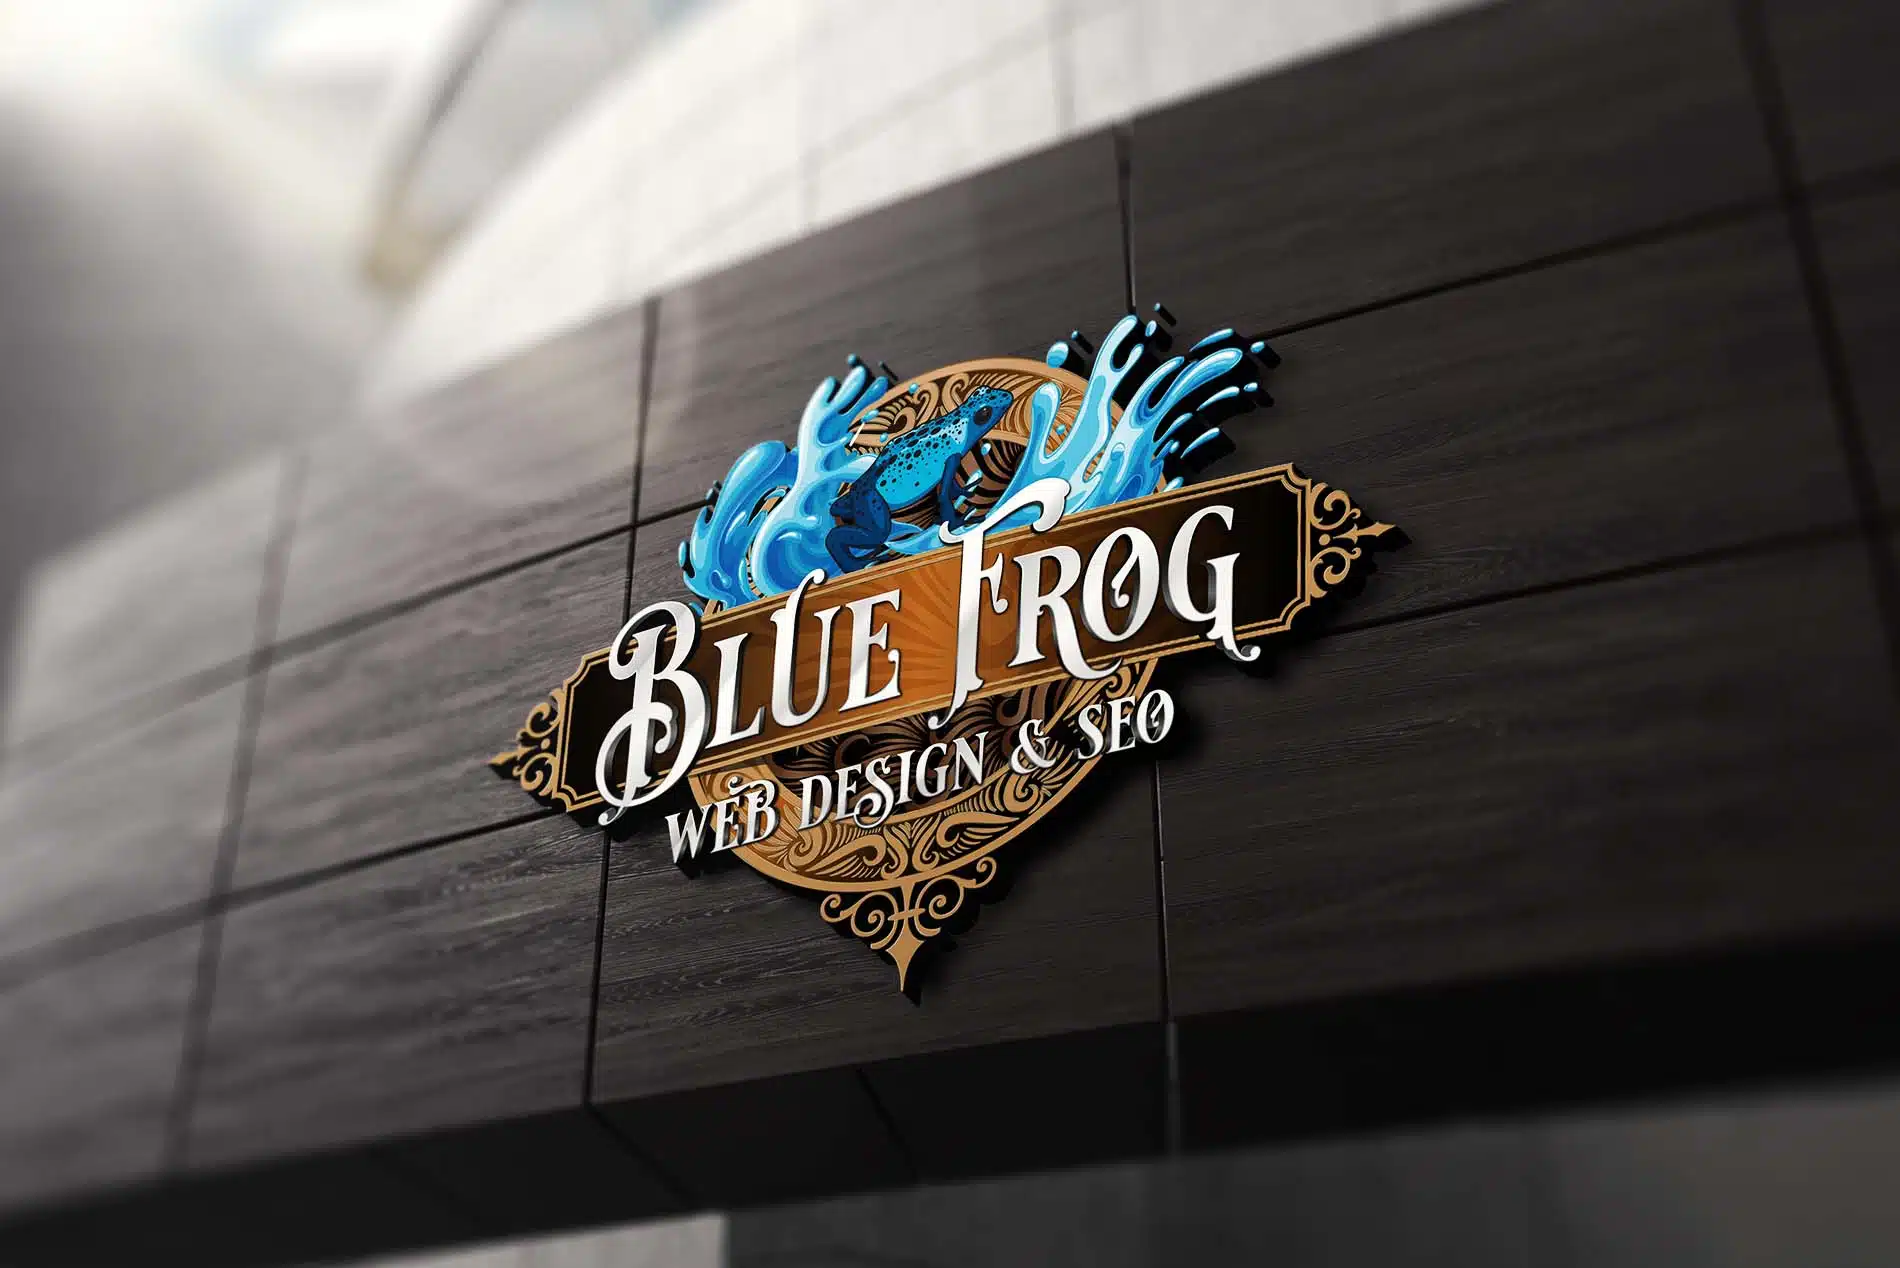 Website Design Agency in El Dorado Hills, CA. Blue Frog Web Design & SEO